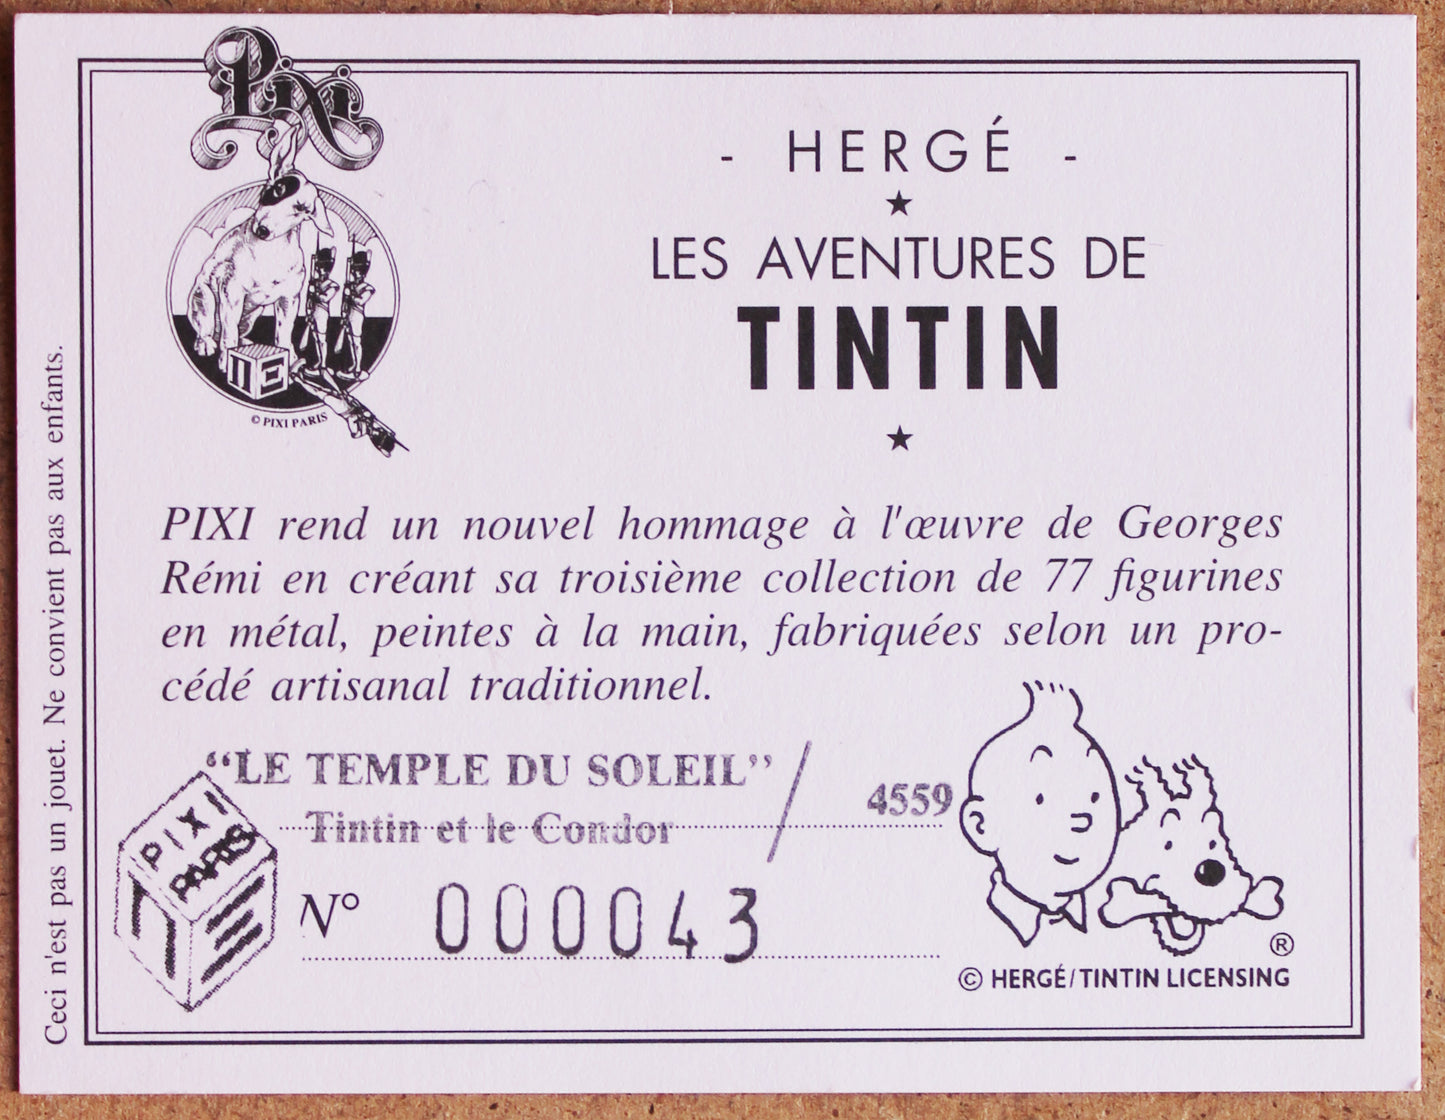 Le Temple Du Soleil, Tintin et le Condor